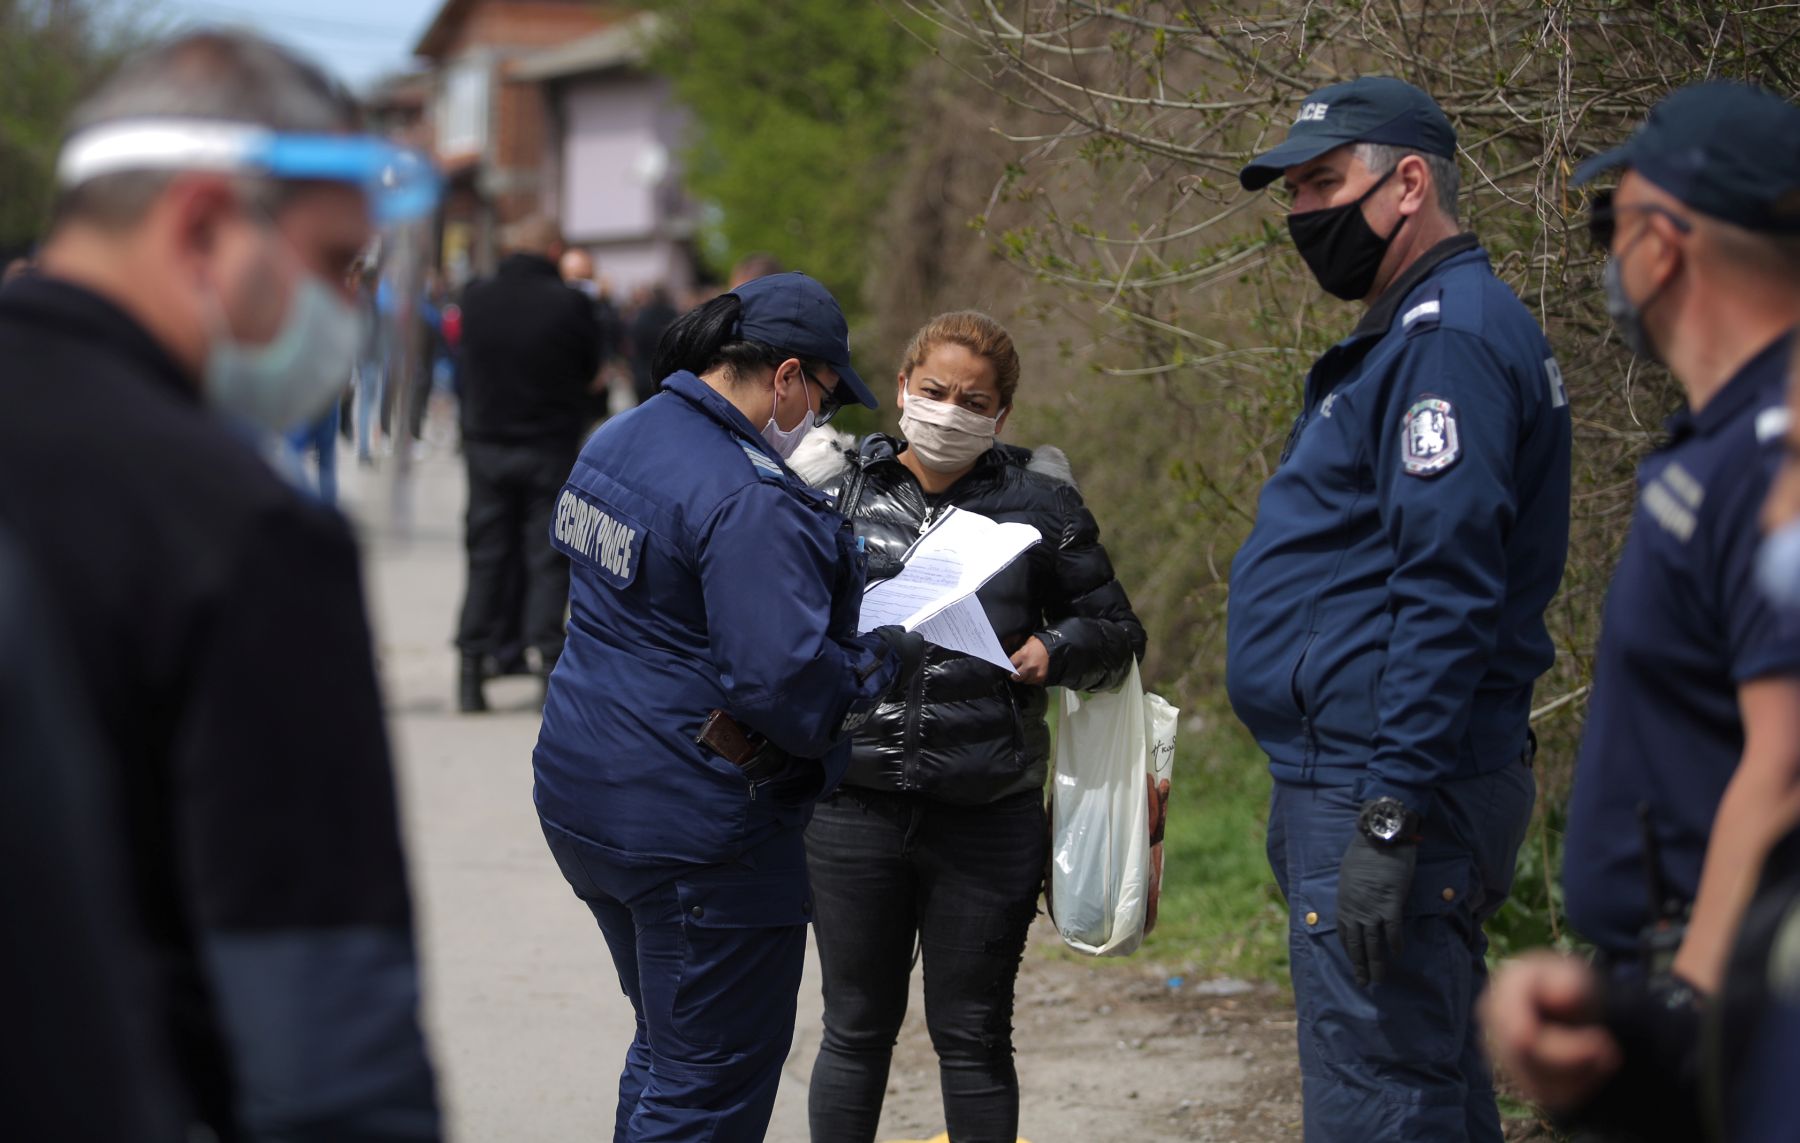 Waarom moeten Roma in Oost-Europa in lockdown en andere burgers niet?